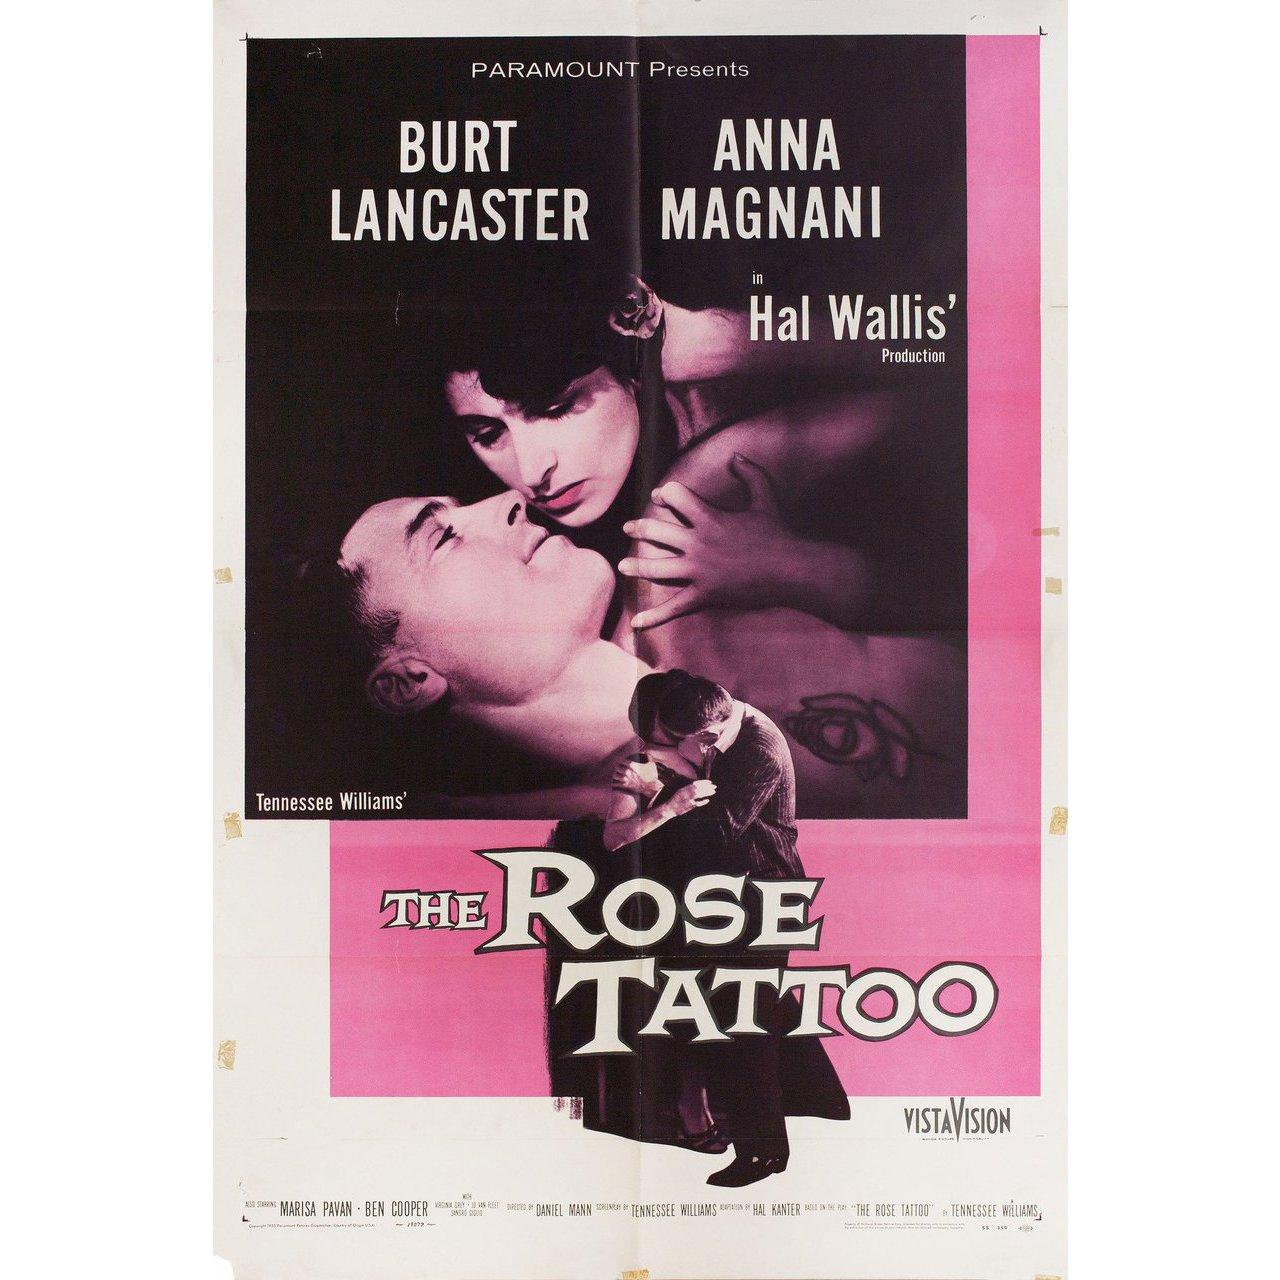 Affiche originale américaine de 1955 pour le film The Rose Tattoo réalisé par Daniel Mann avec Anna Magnani / Burt Lancaster / Marisa Pavan / Ben Cooper. Très bon état, plié avec des taches de ruban adhésif. De nombreuses affiches originales ont été